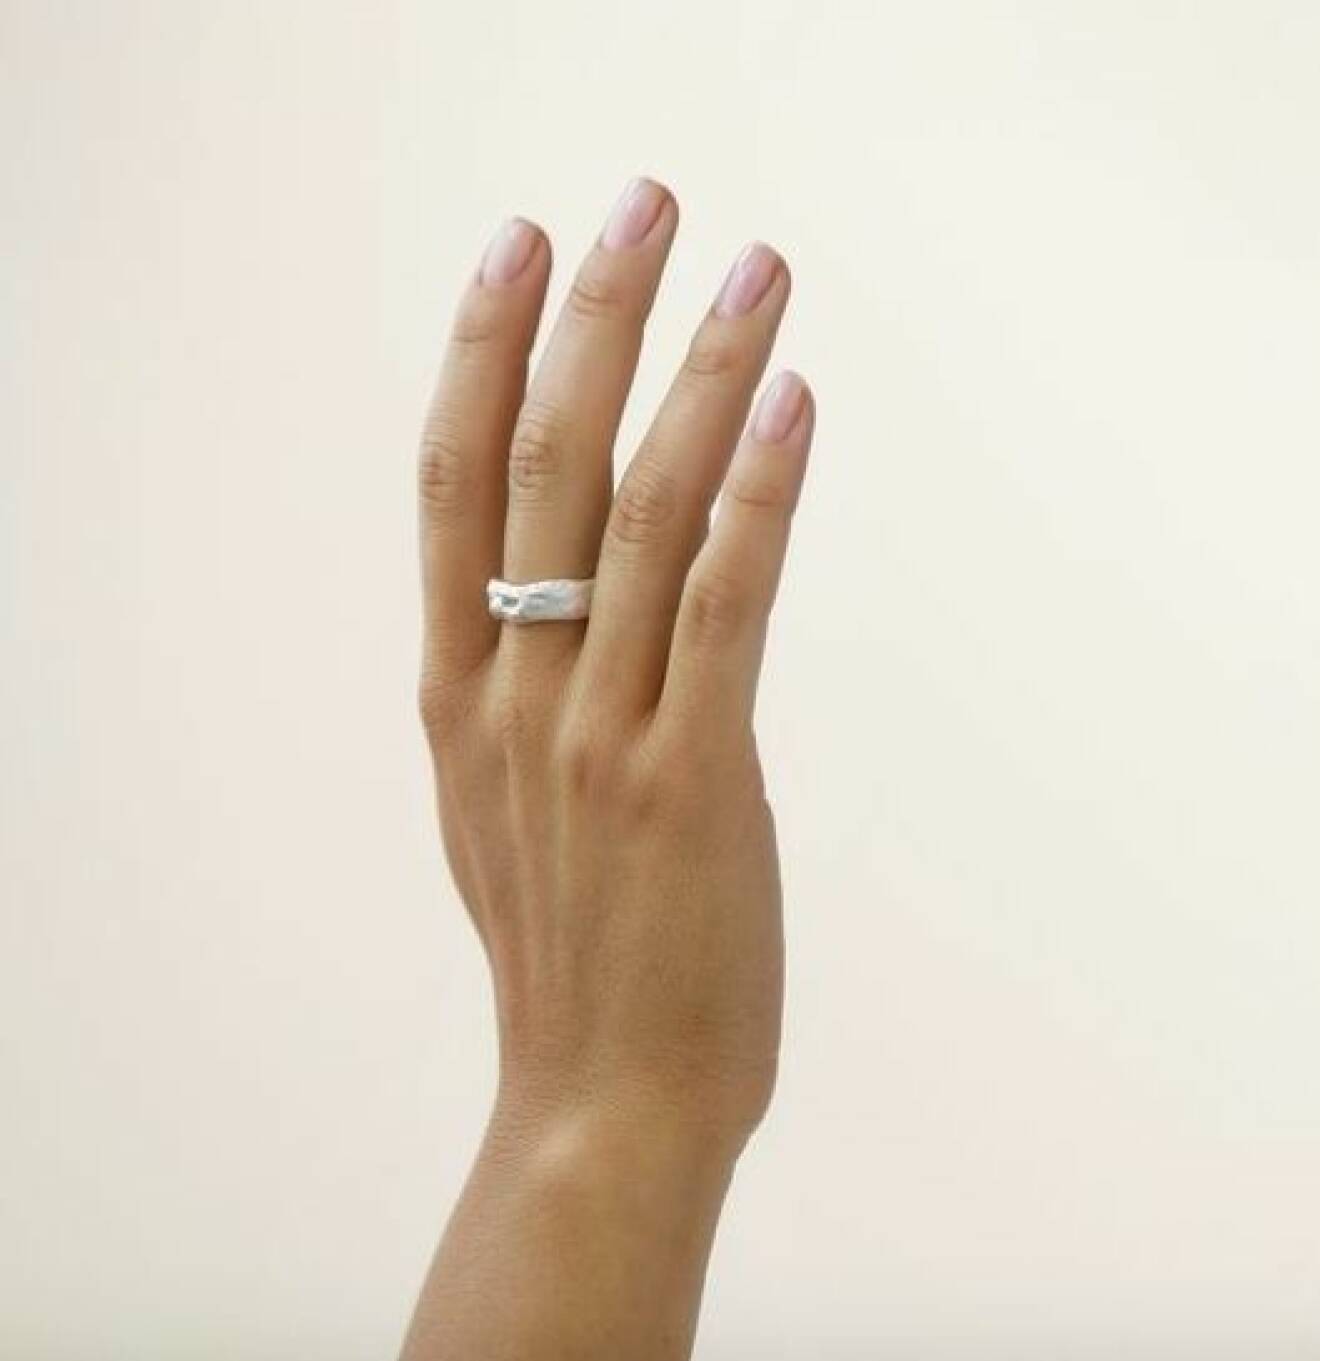 En hand med en bred, silverring med struktur på långfingret. Ring från Nootka jewlery.